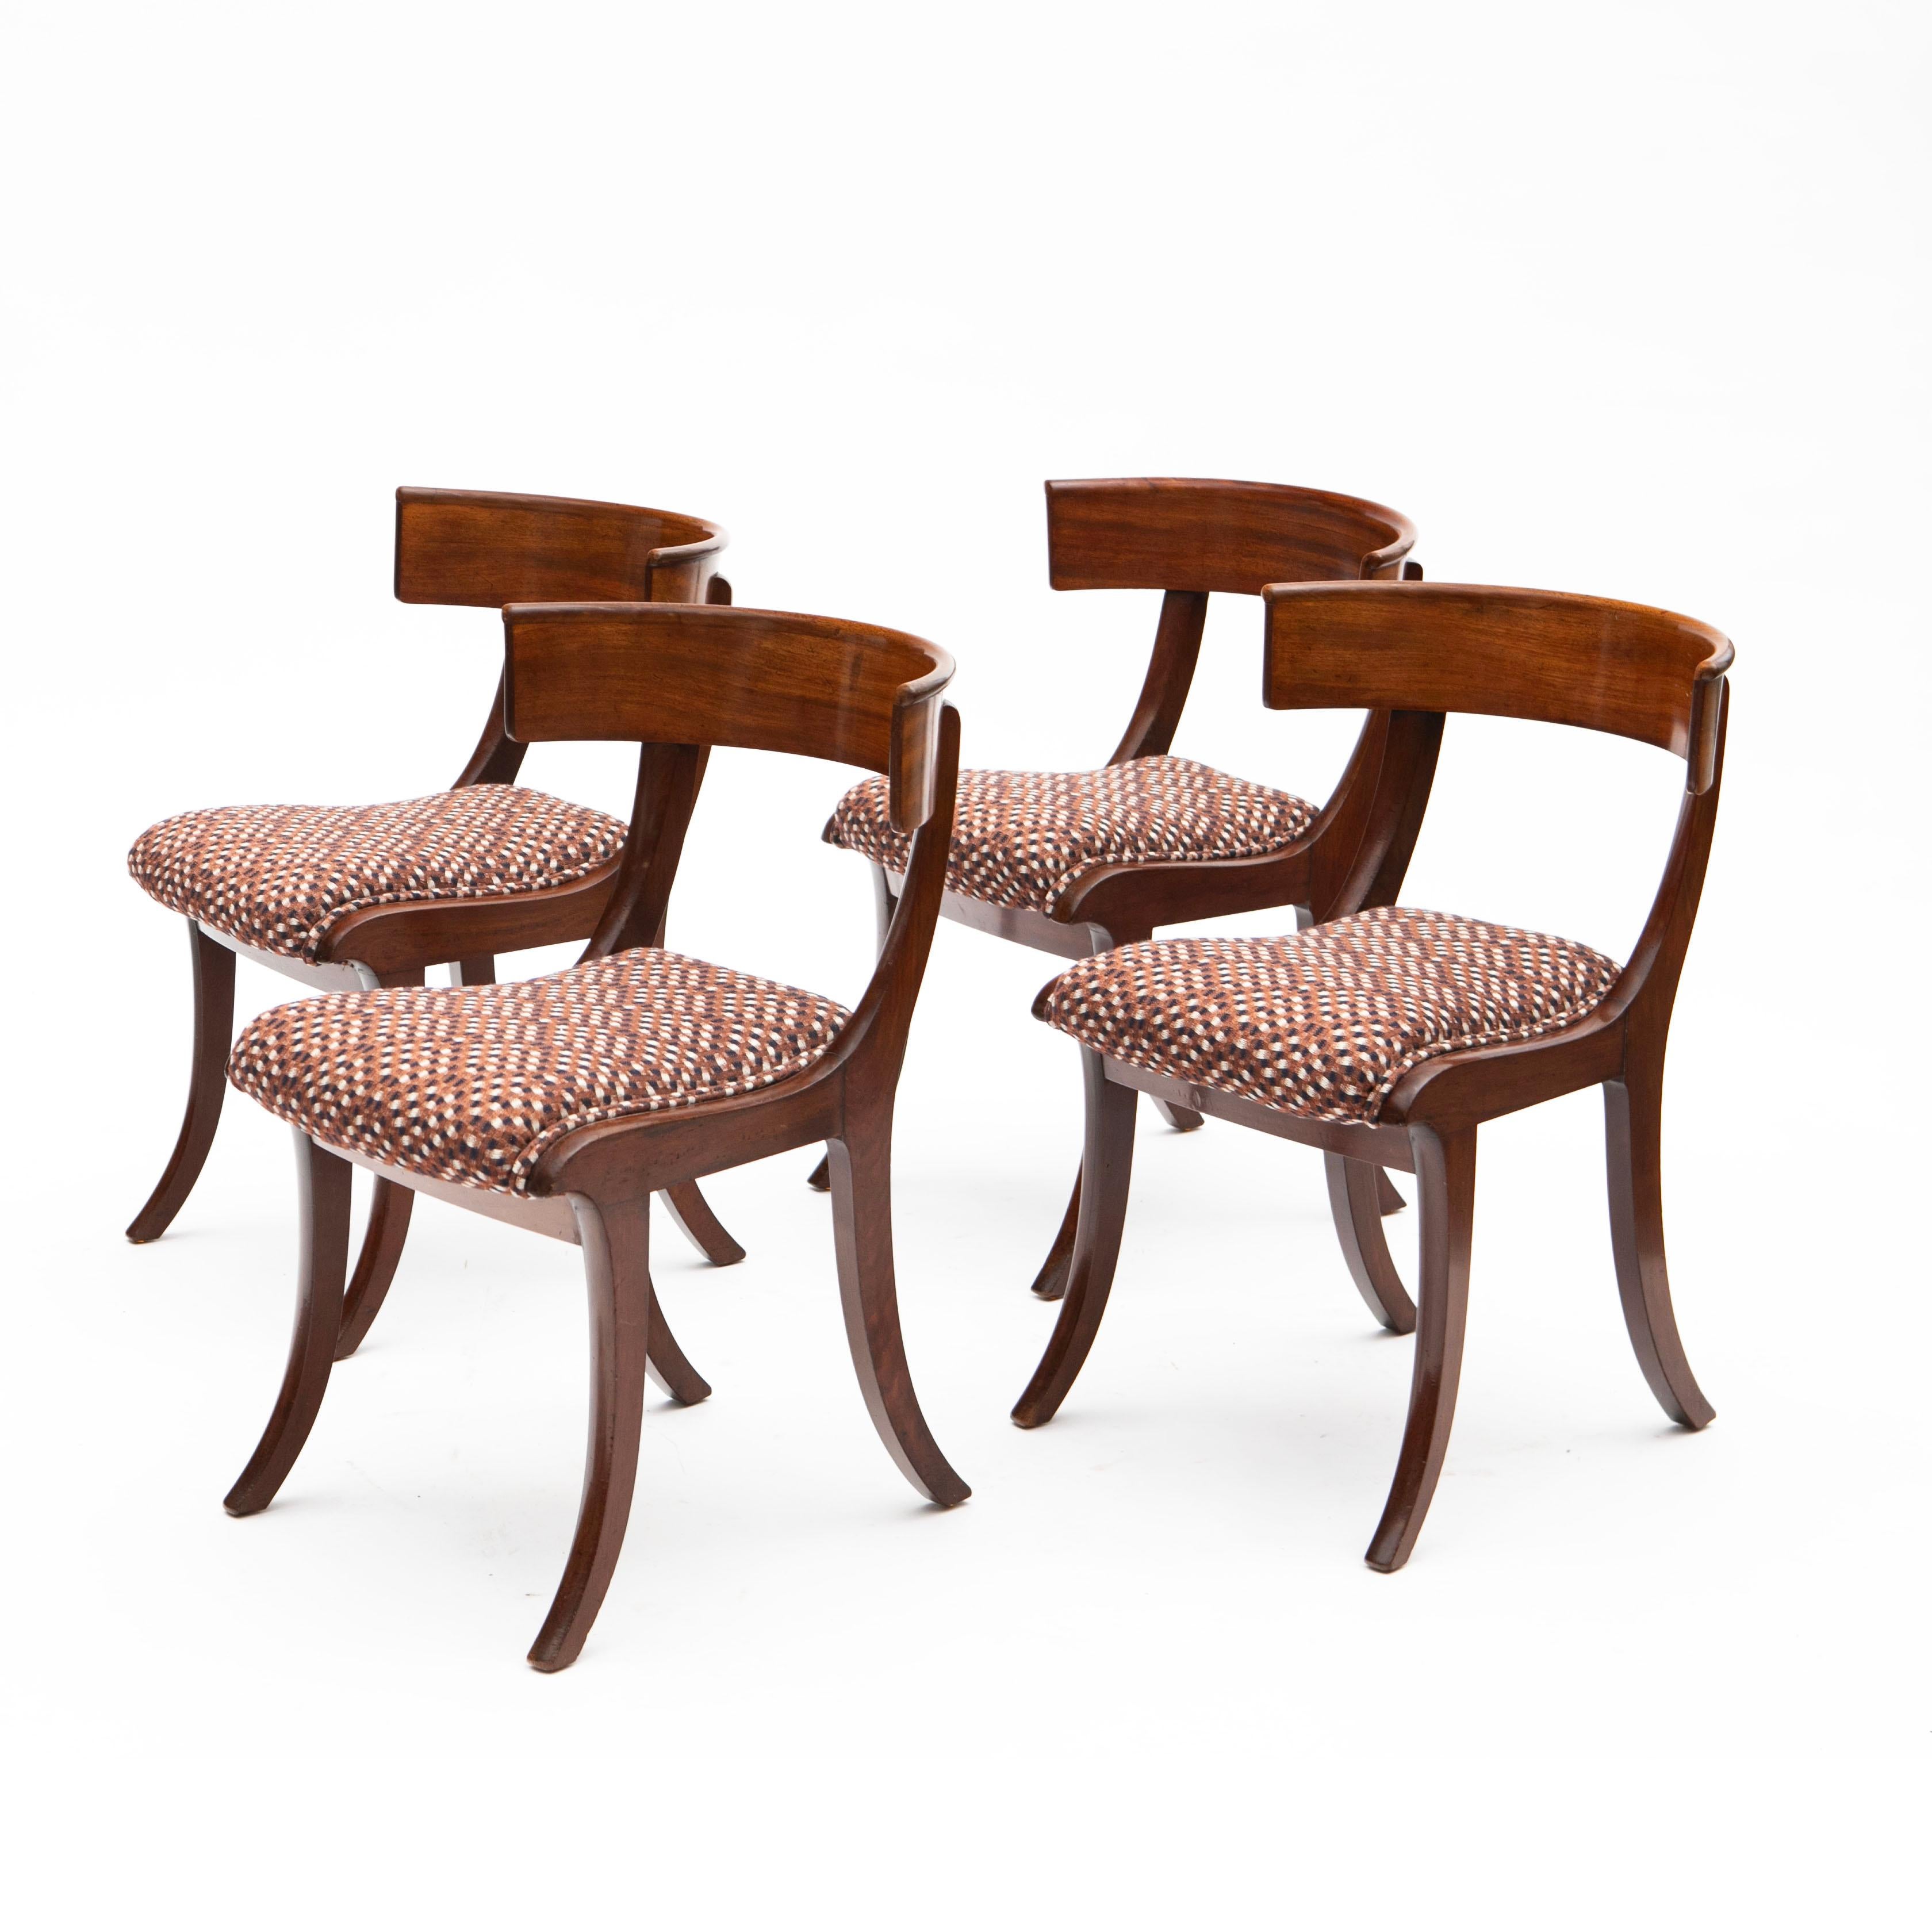 Ein Satz von vier eleganten Klismos-Stühlen aus dem späten Empire in klassischem Design.
Hochwertig verarbeitet, mit Rahmen aus Mahagoni und polierter Buche, geschmackvoll nachbearbeitet mit französischer Politur.
Die Sitze sind neu gepolstert mit